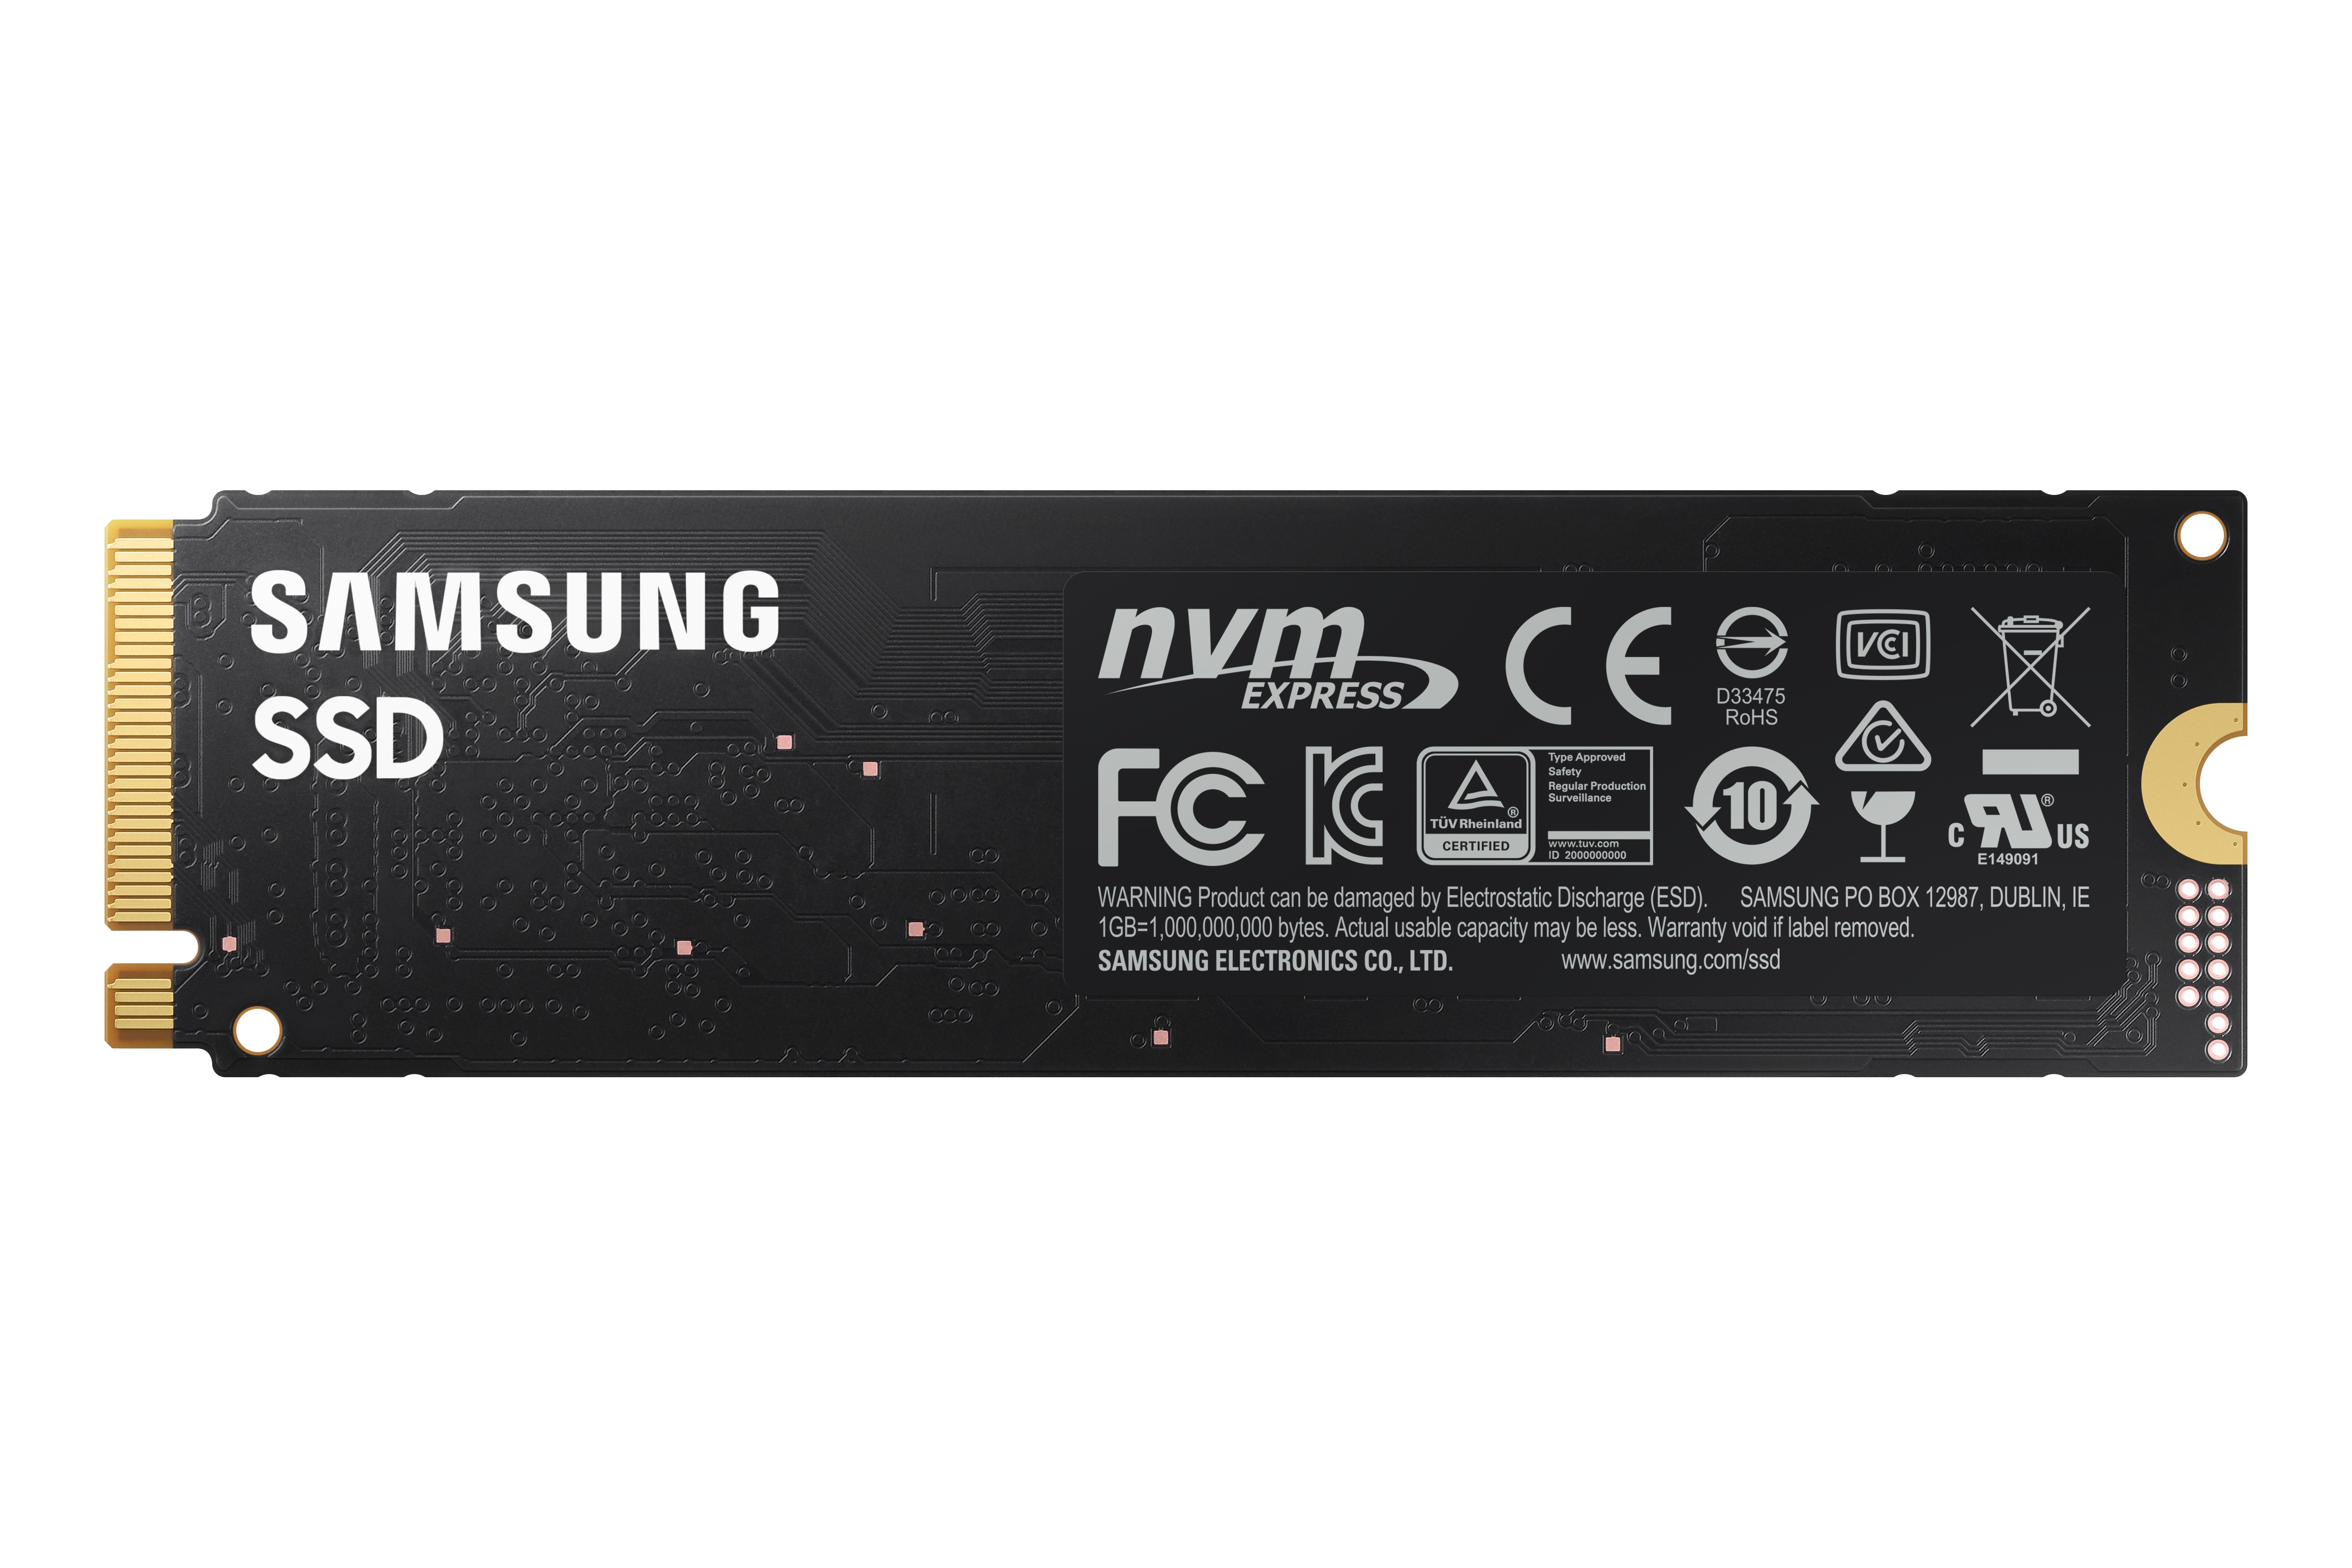 980 PCIe® 3.0 NVMe® Gaming SSD 500GB Memory & Storage - MZ-V8V500B/AM |  Samsung US